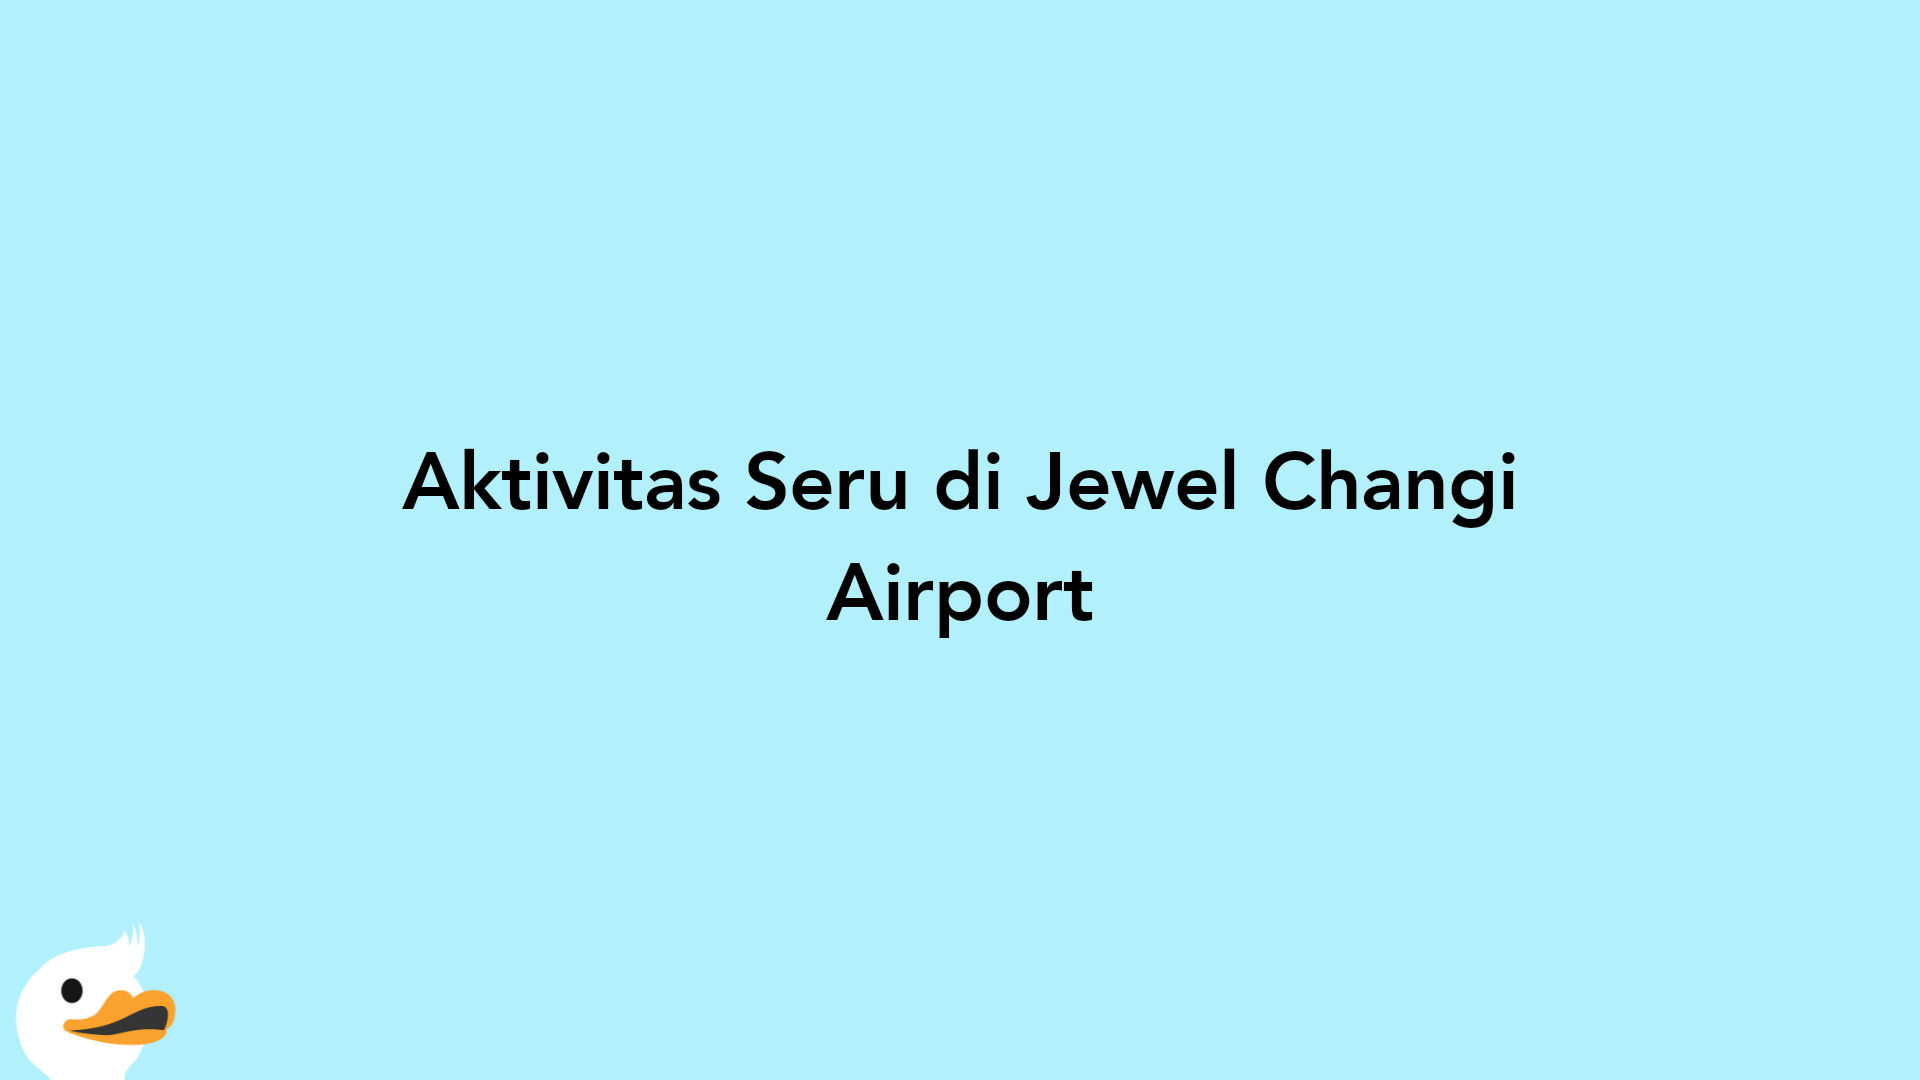 Aktivitas Seru di Jewel Changi Airport